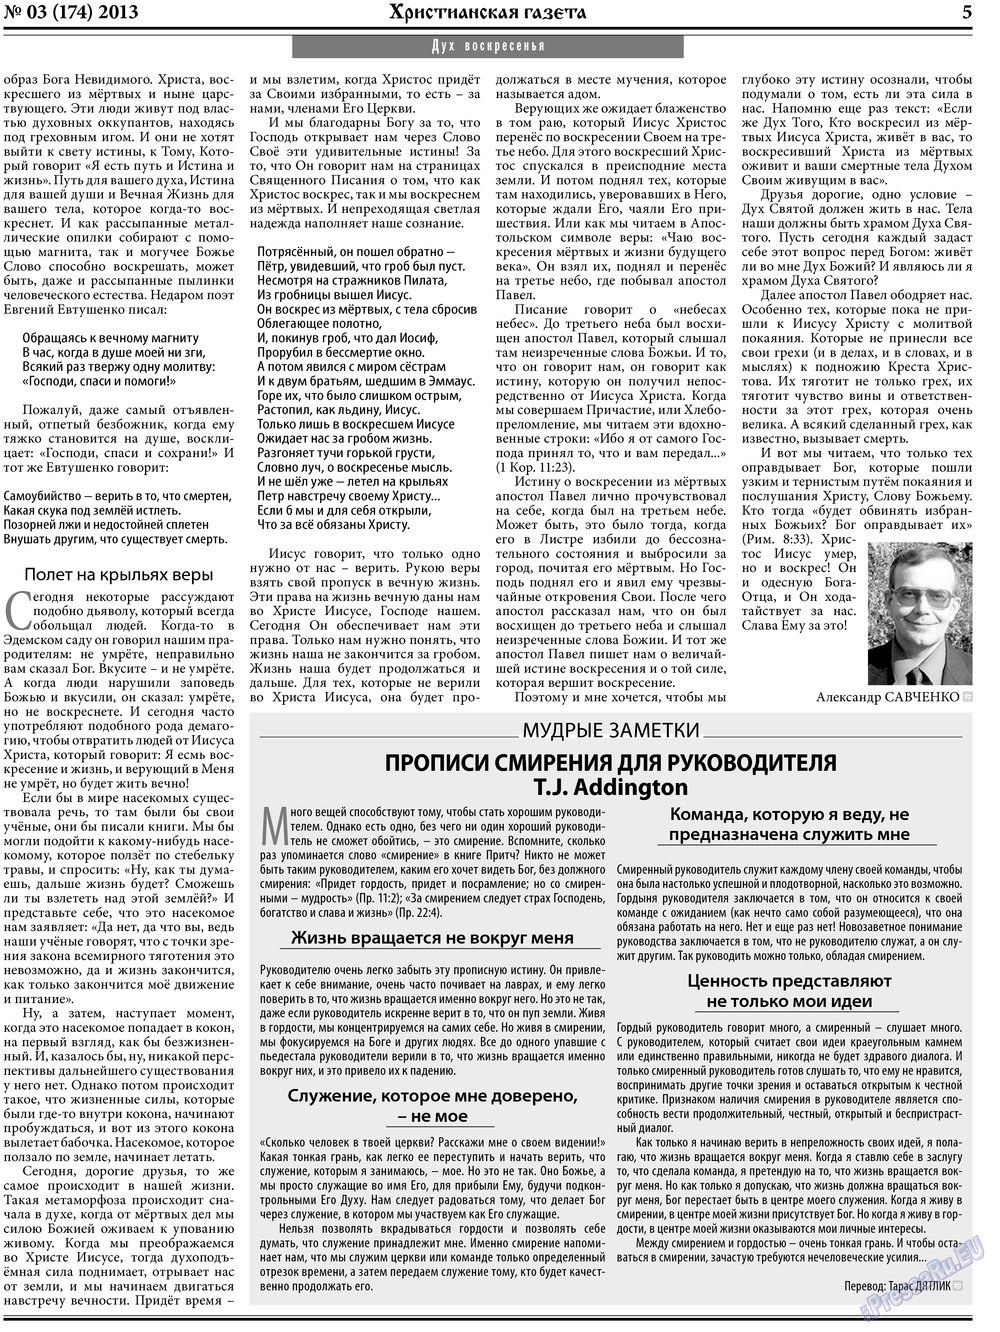 Христианская газета, газета. 2013 №3 стр.5